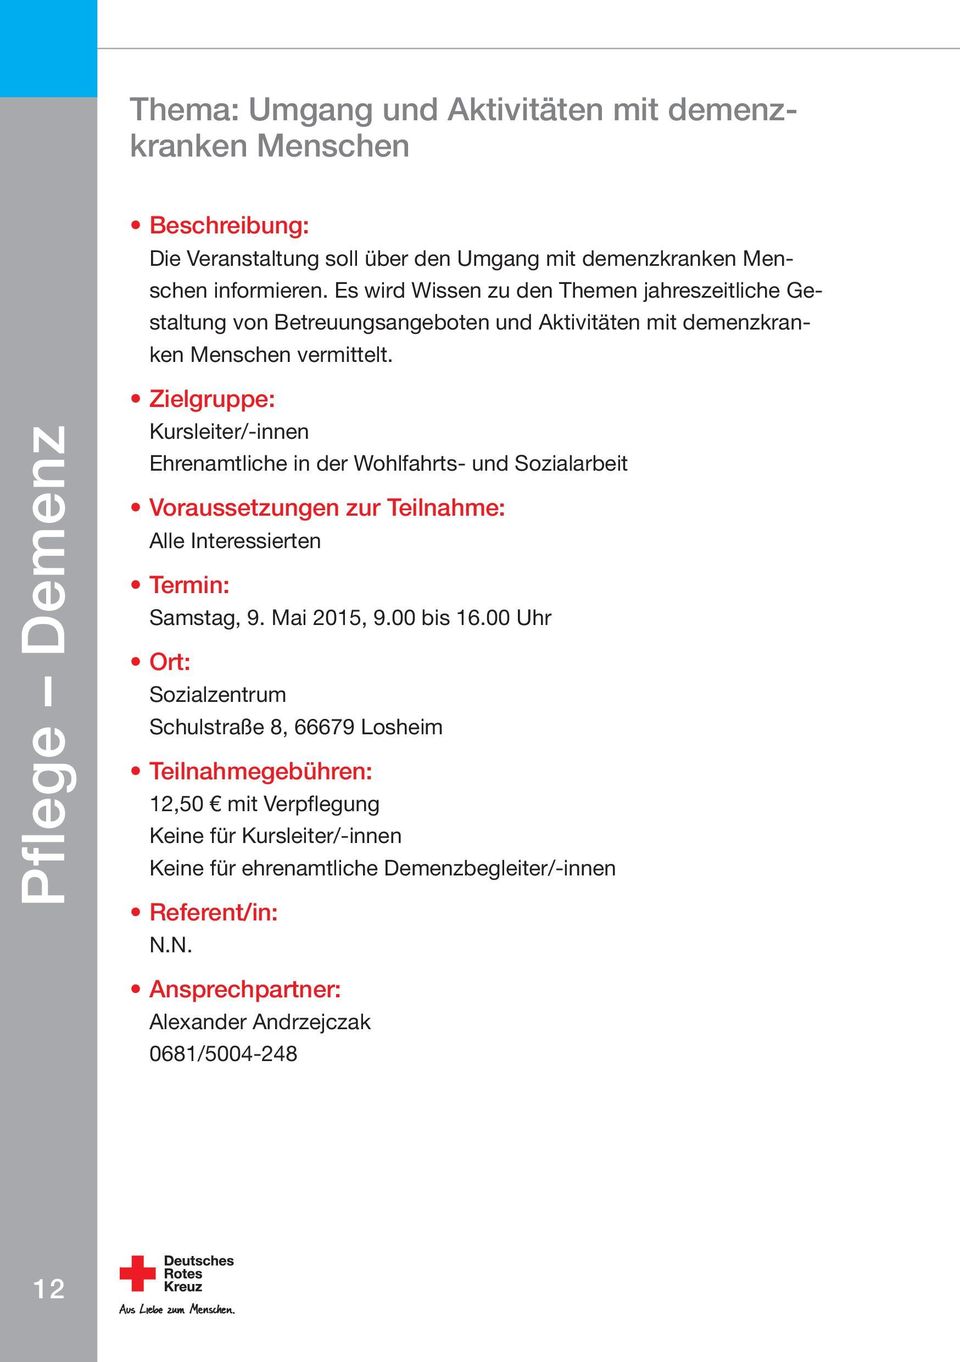 Pflege Demenz Kursleiter/-innen Ehrenamtliche in der Wohlfahrts- und Sozialarbeit Voraussetzungen zur Teilnahme: Alle Interessierten Samstag, 9. Mai 2015, 9.